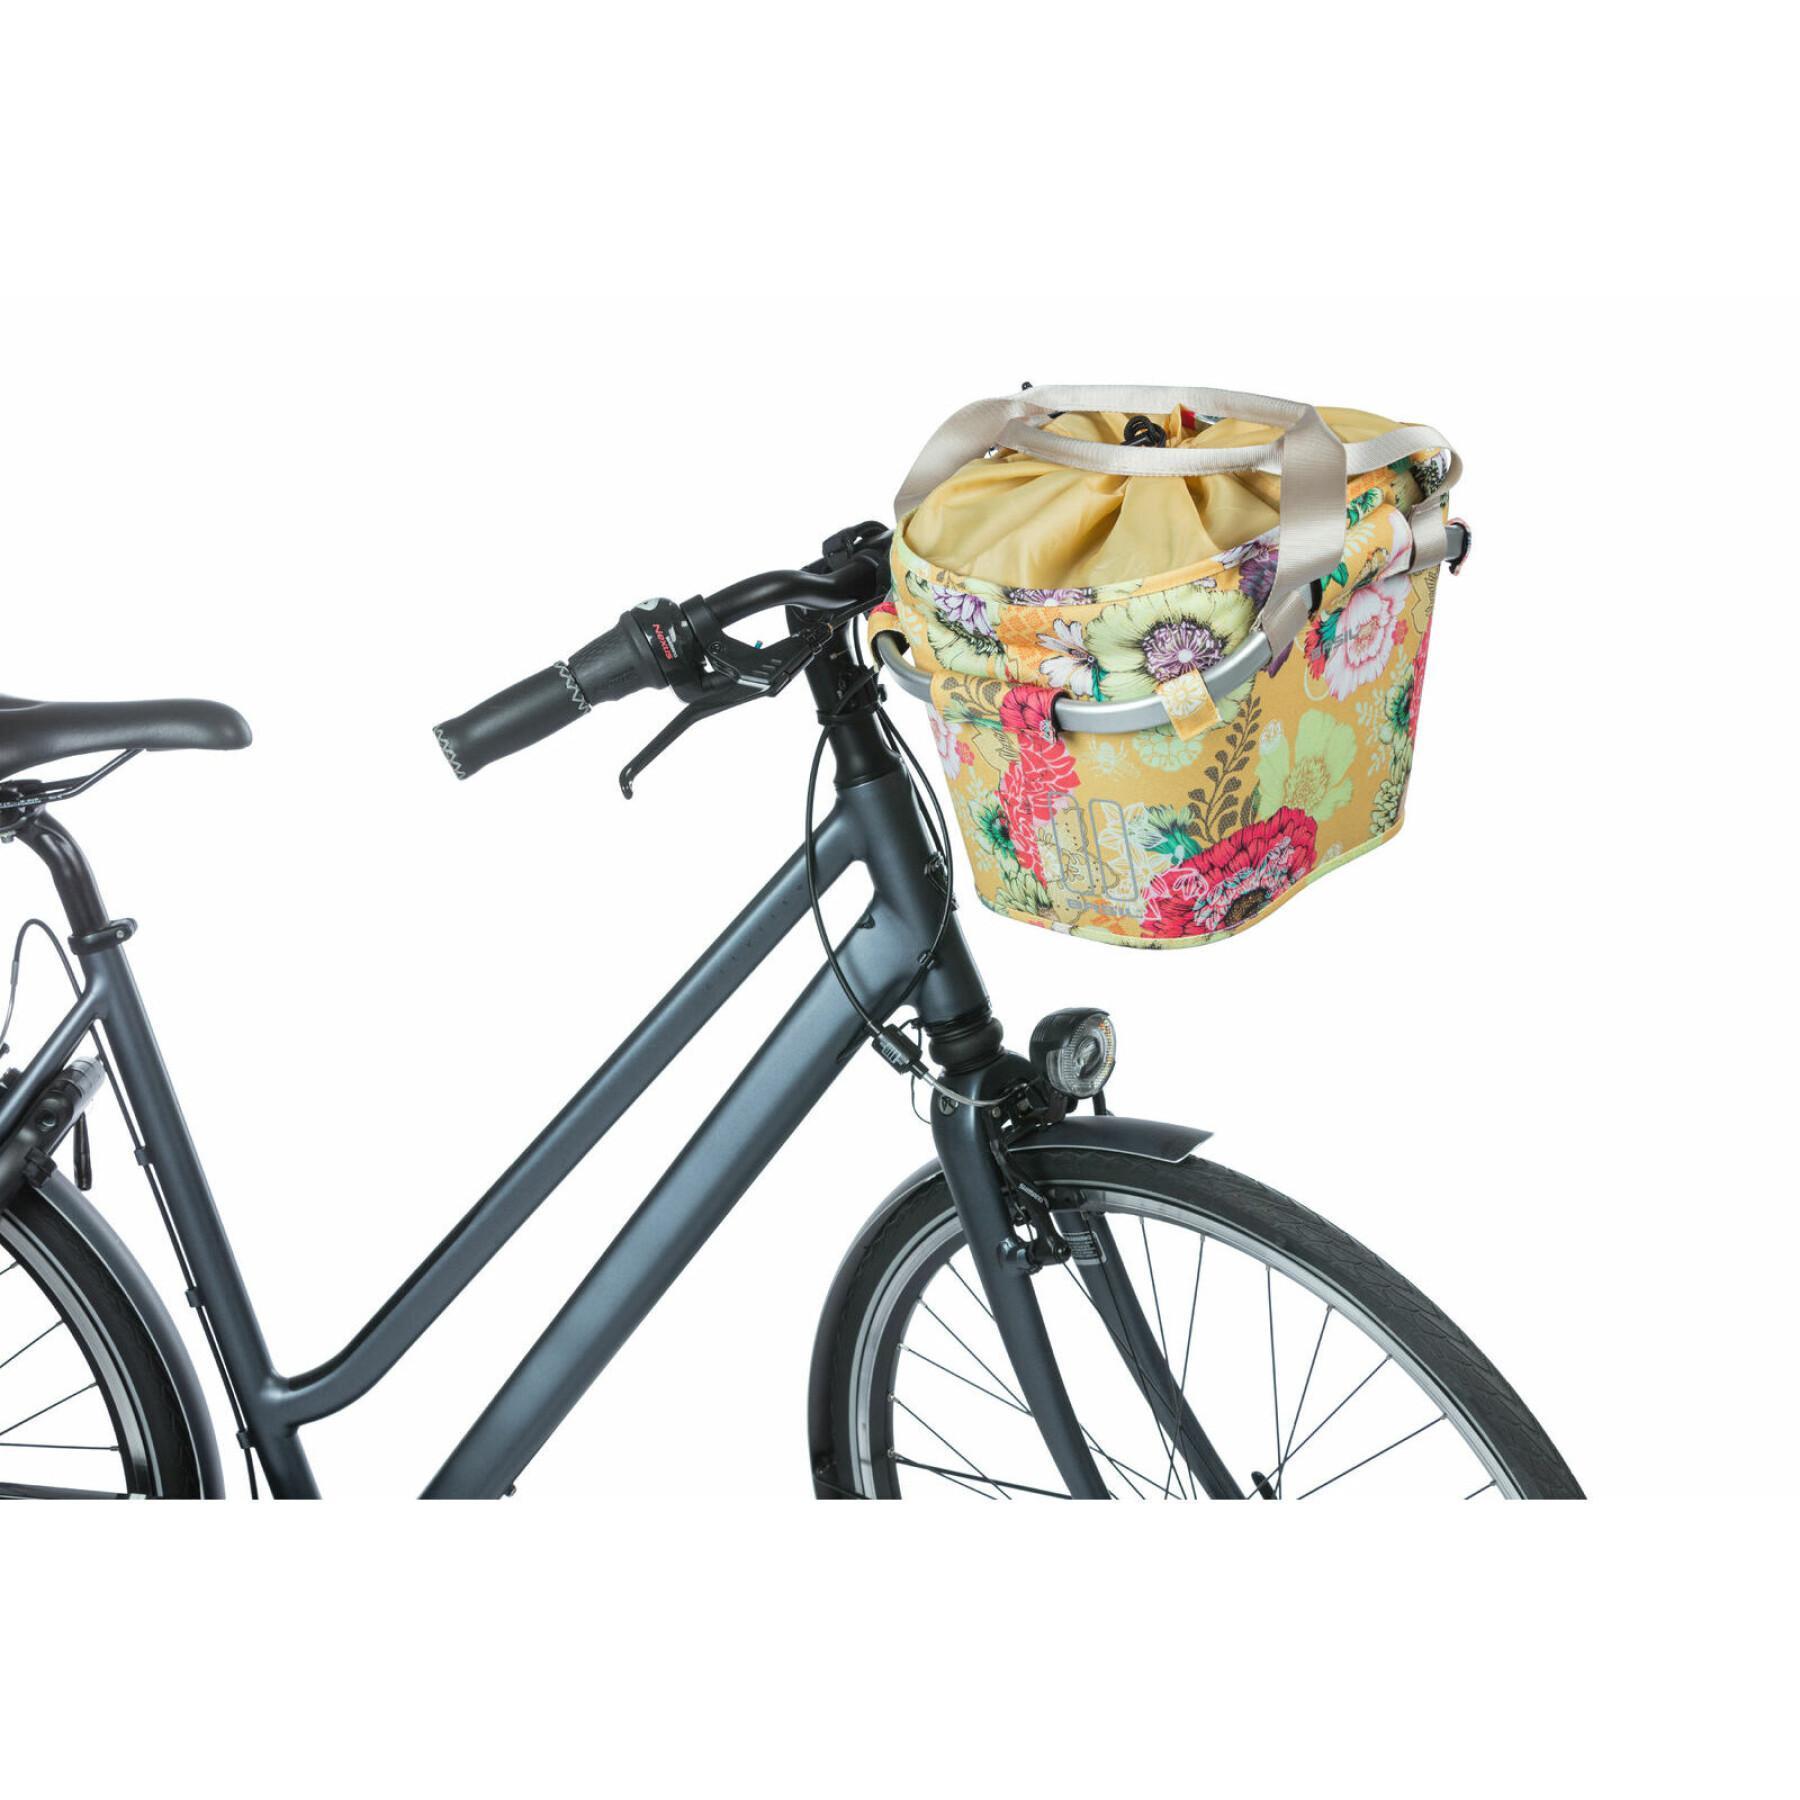 Waterproof front bike basket with reflective Basil Bloom field Klickfix